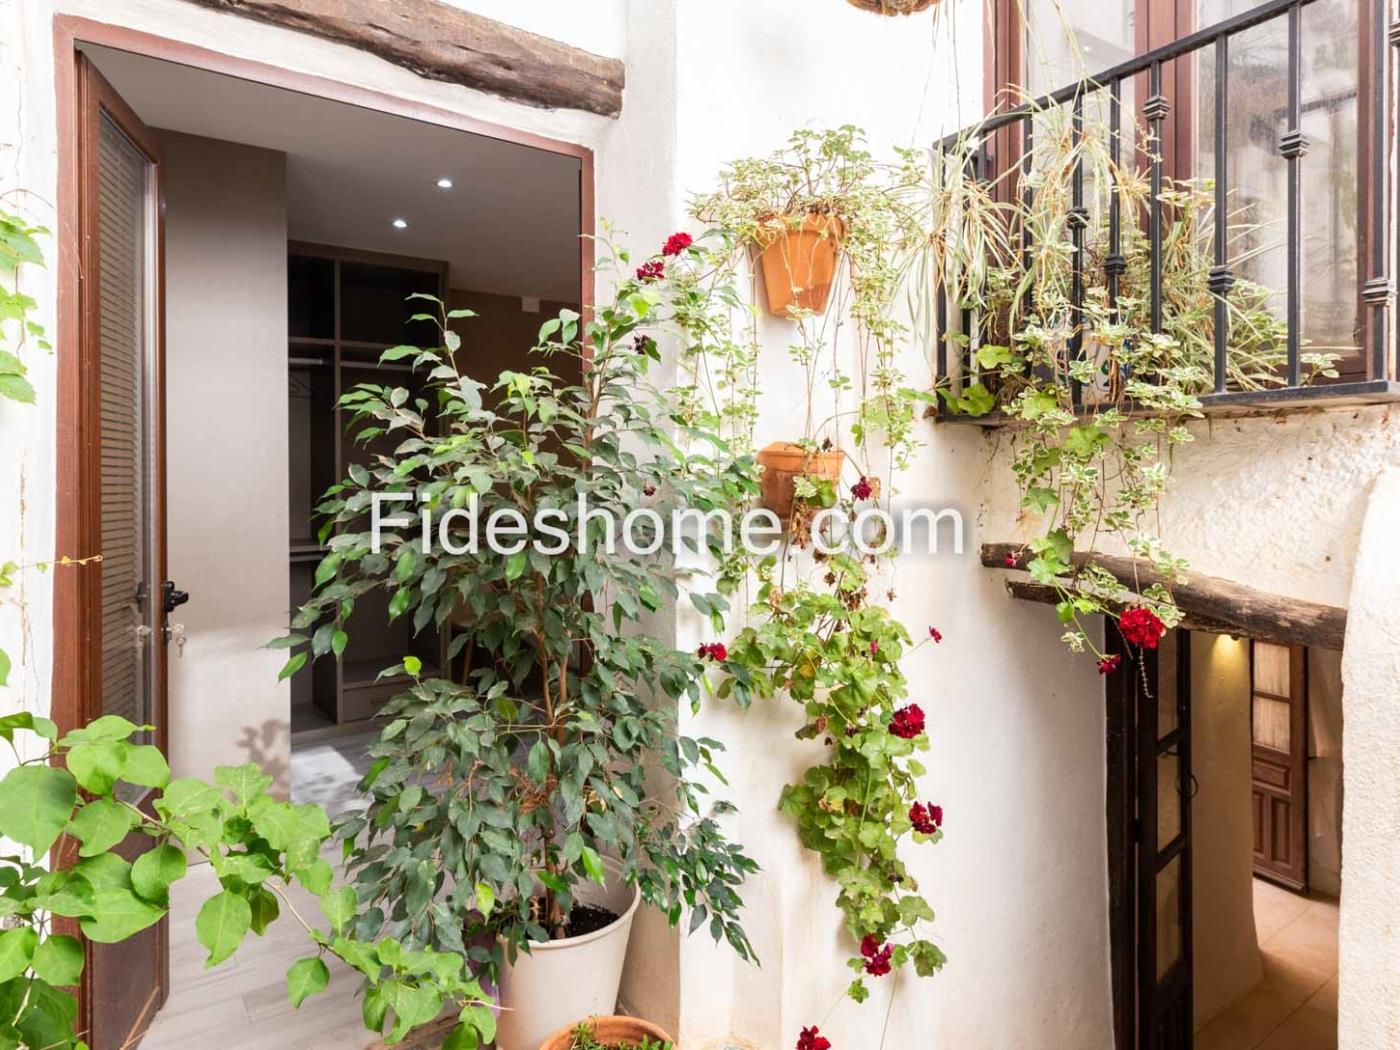 Herrliches charmantes Haus mit Terrasse und Aussicht in Chite. in Chite